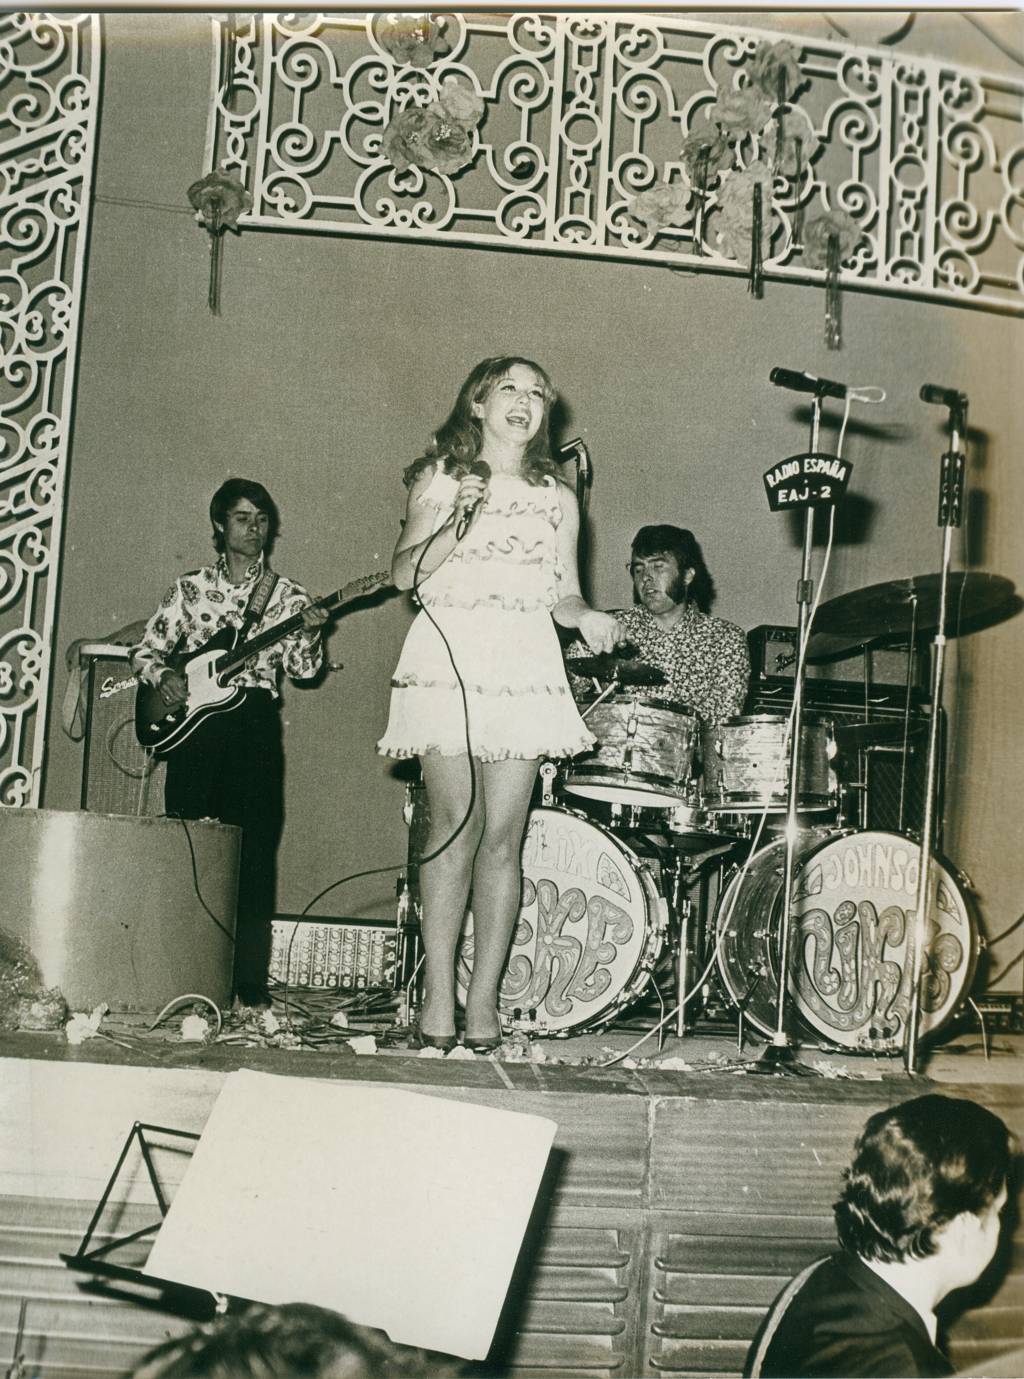 Maruja Garrido consiguió el título de la mejor cantante flamenca, con su célebre canción “La luna ya está en el bote” recibió una de las mayores ovaciones del festival. El flamenco tenía su sitio en los gustos juveniles.